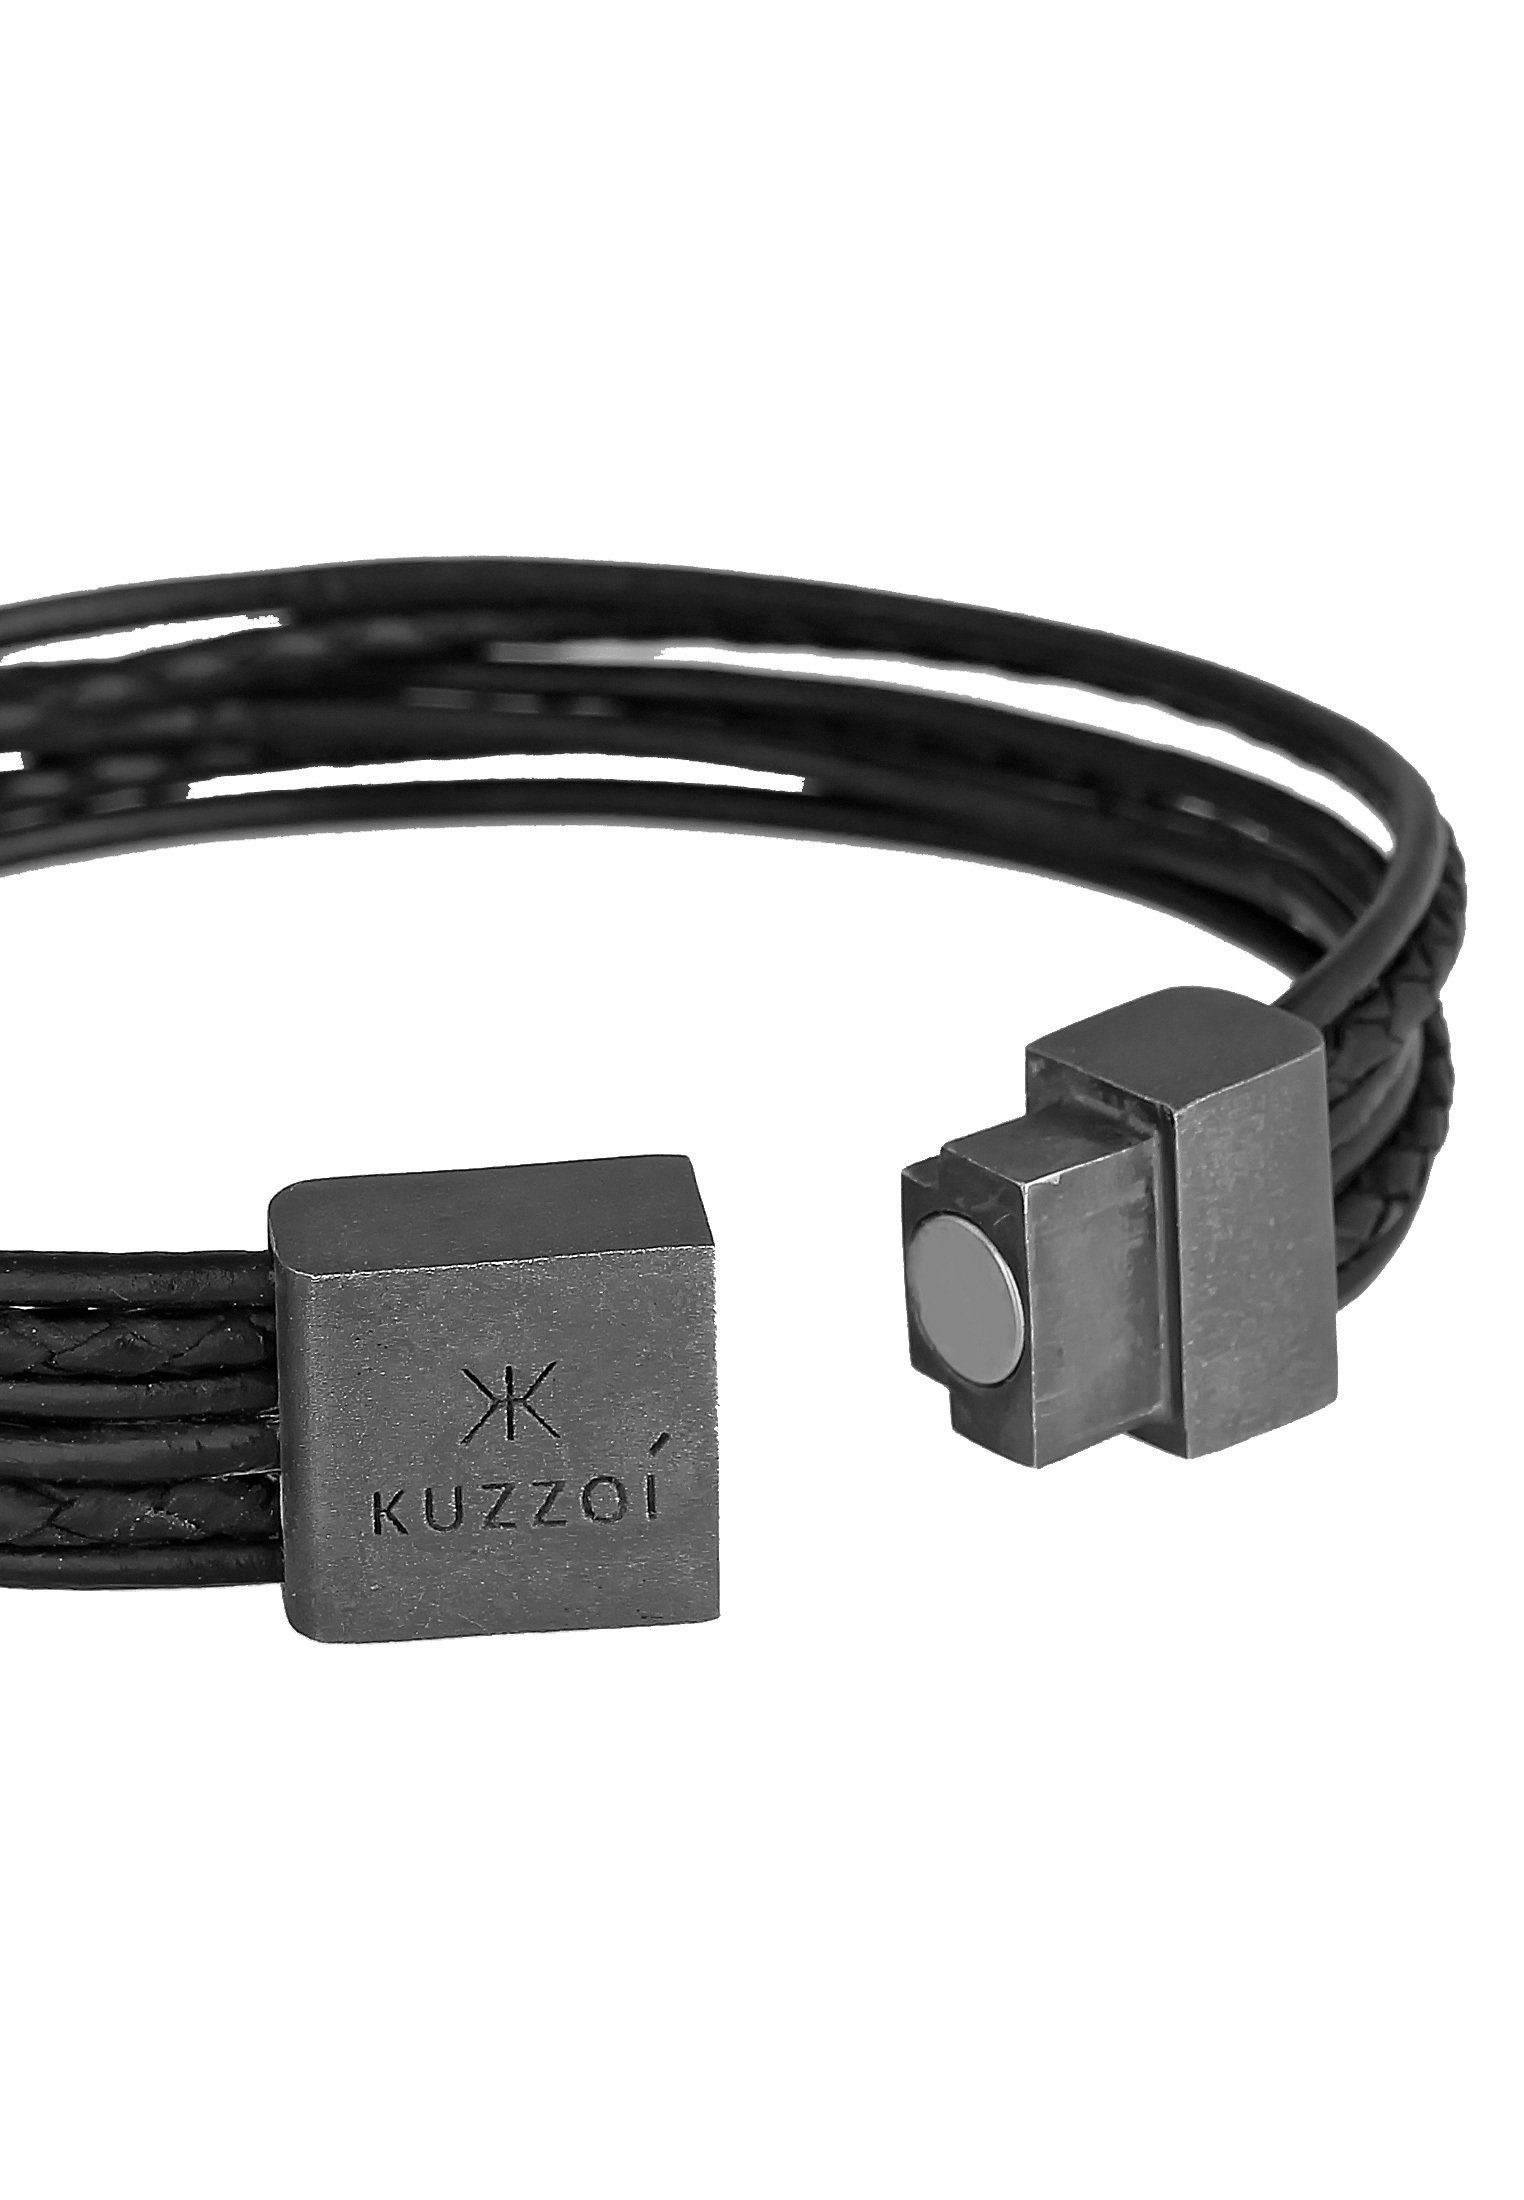 6-reihig 925 Basic Kuzzoi Magnet Leder Silber oxidiert Armband